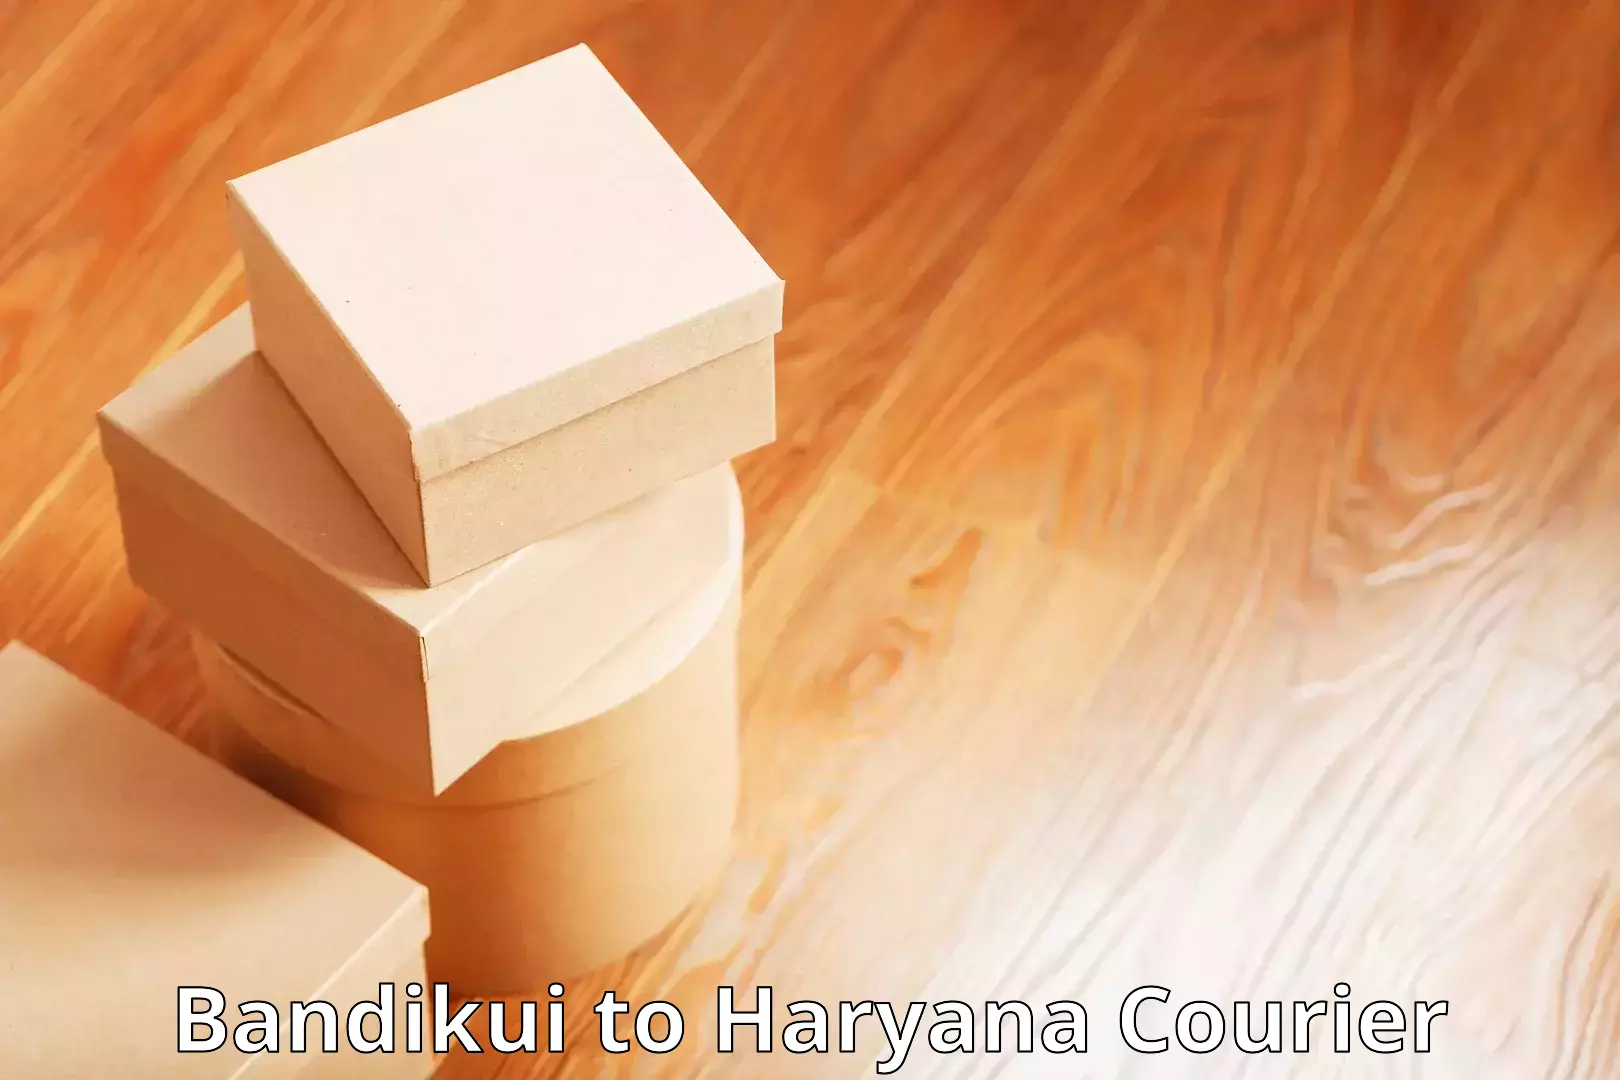 Next-generation courier services Bandikui to Ratia